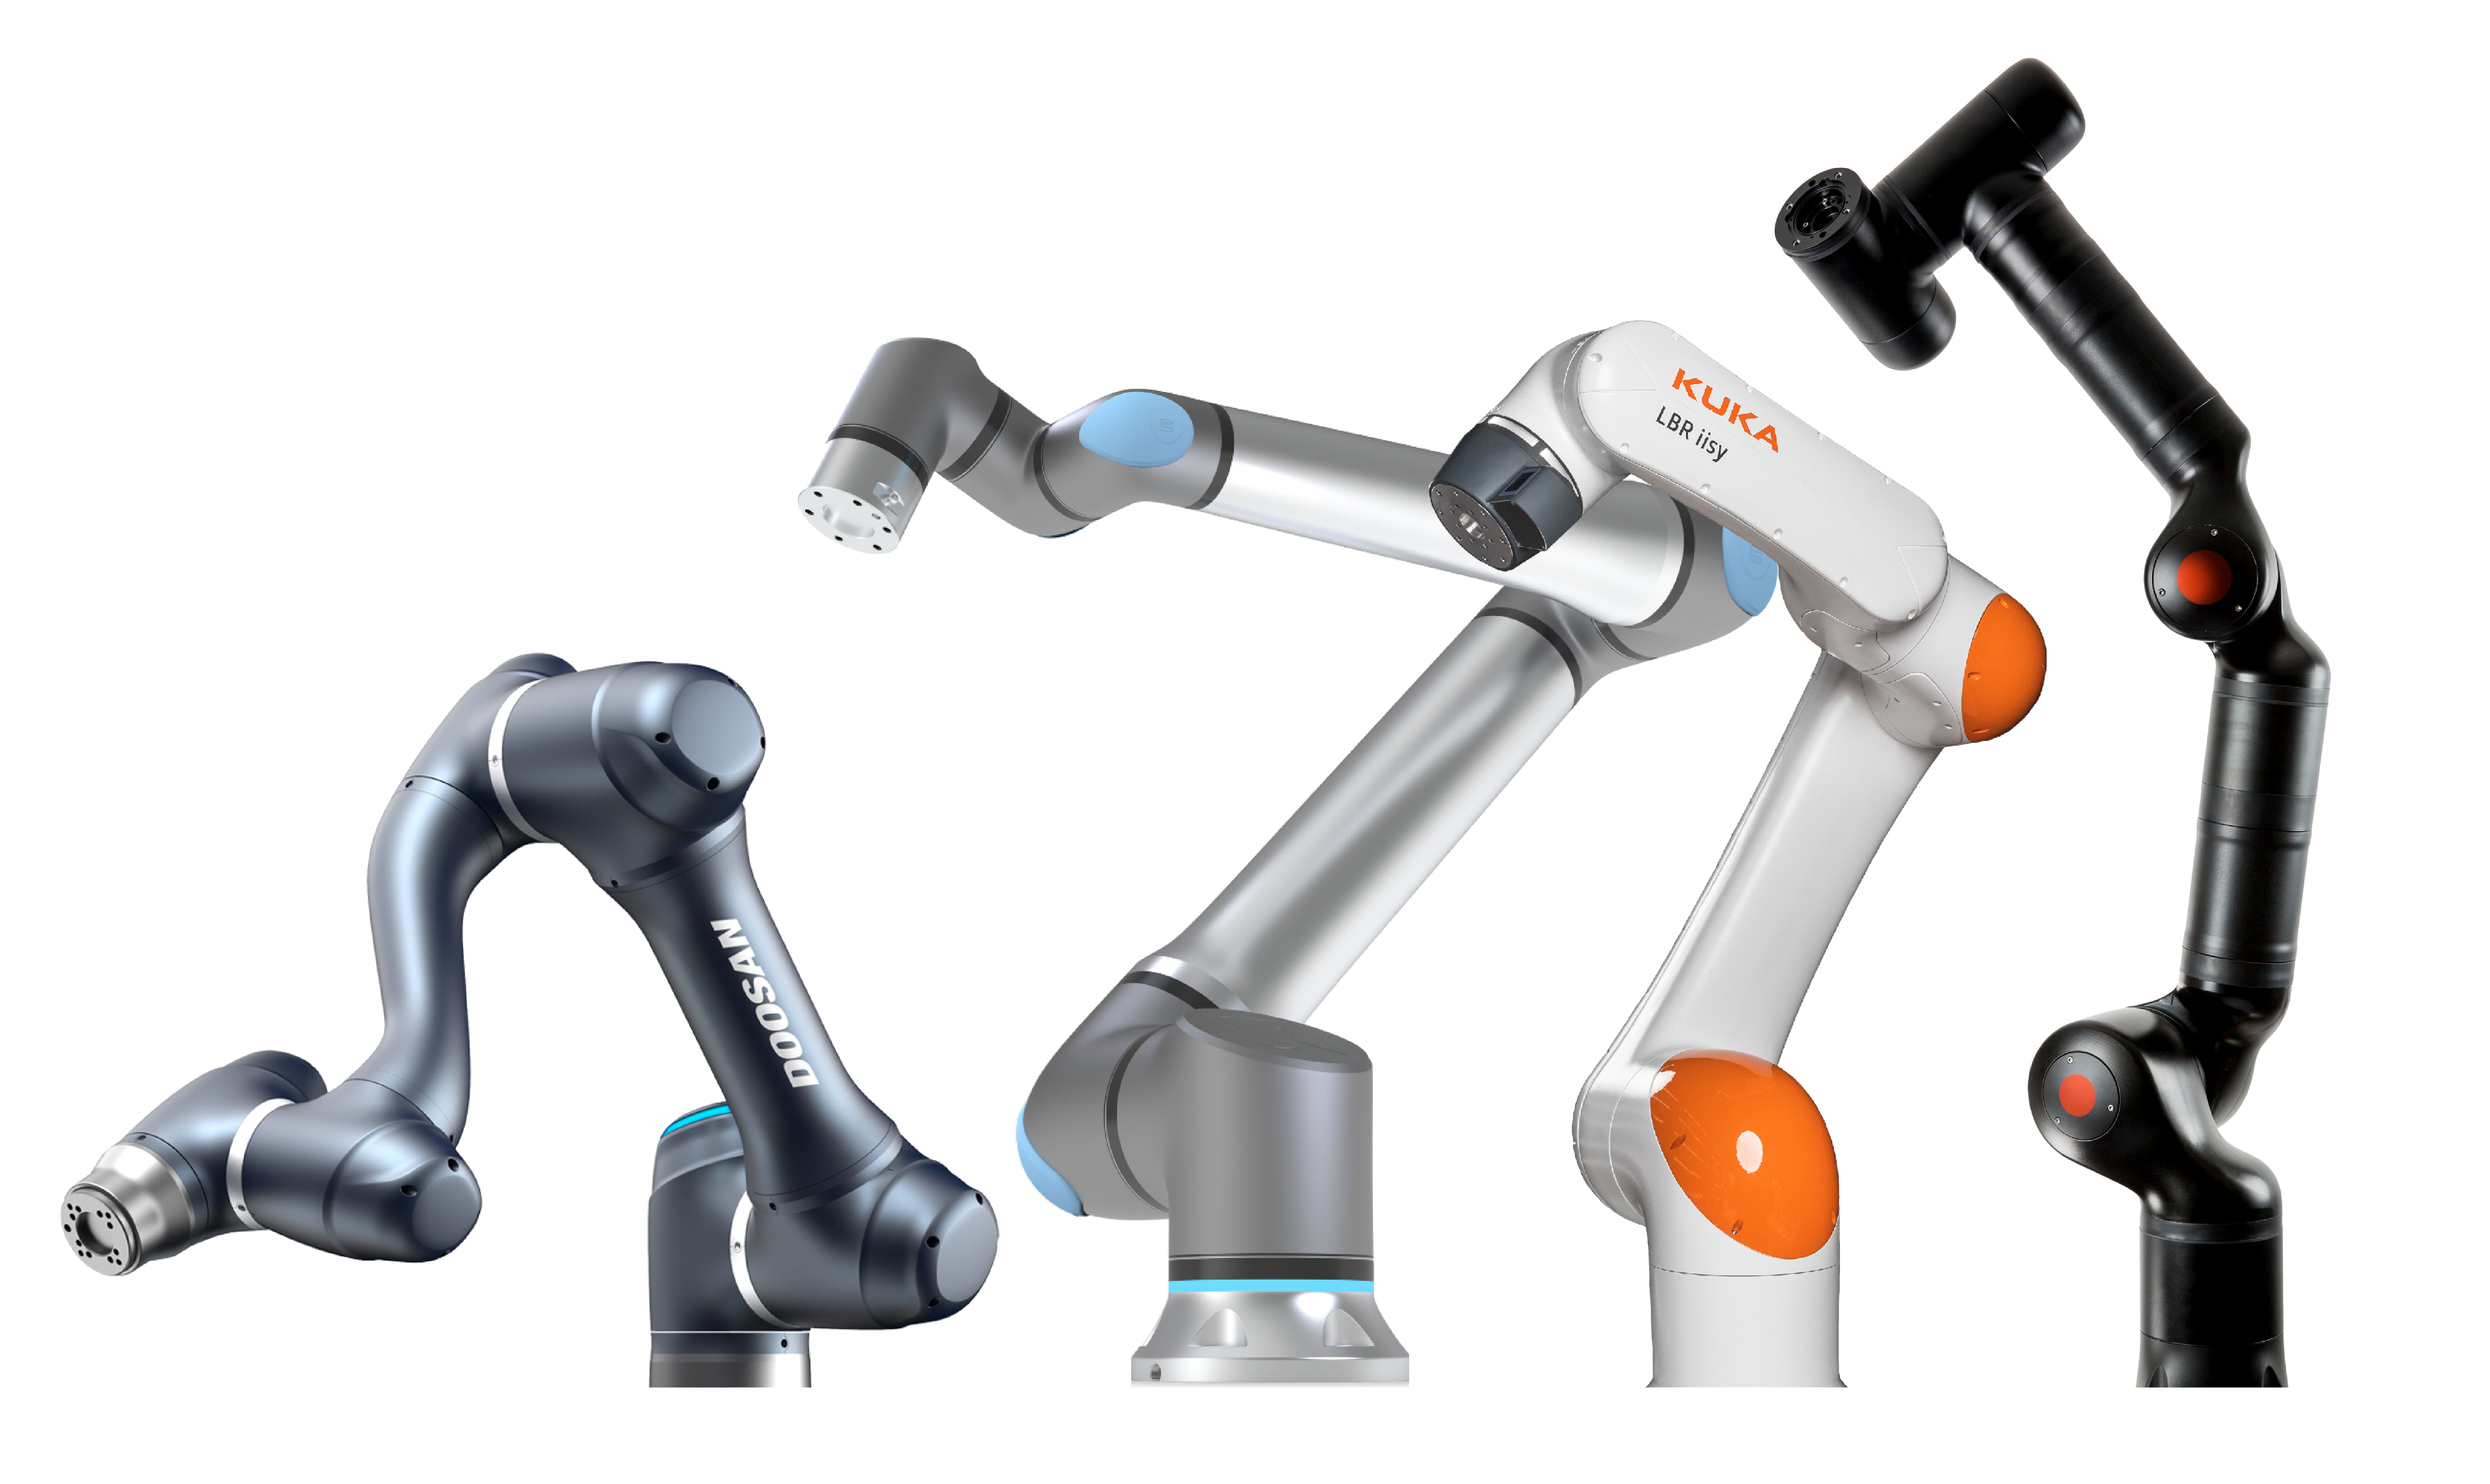 Das Bild zeigt vier verschiedene Modelle wobei die Roboterarme unterschiedliche Designs und Farbgebungen aufweisen.